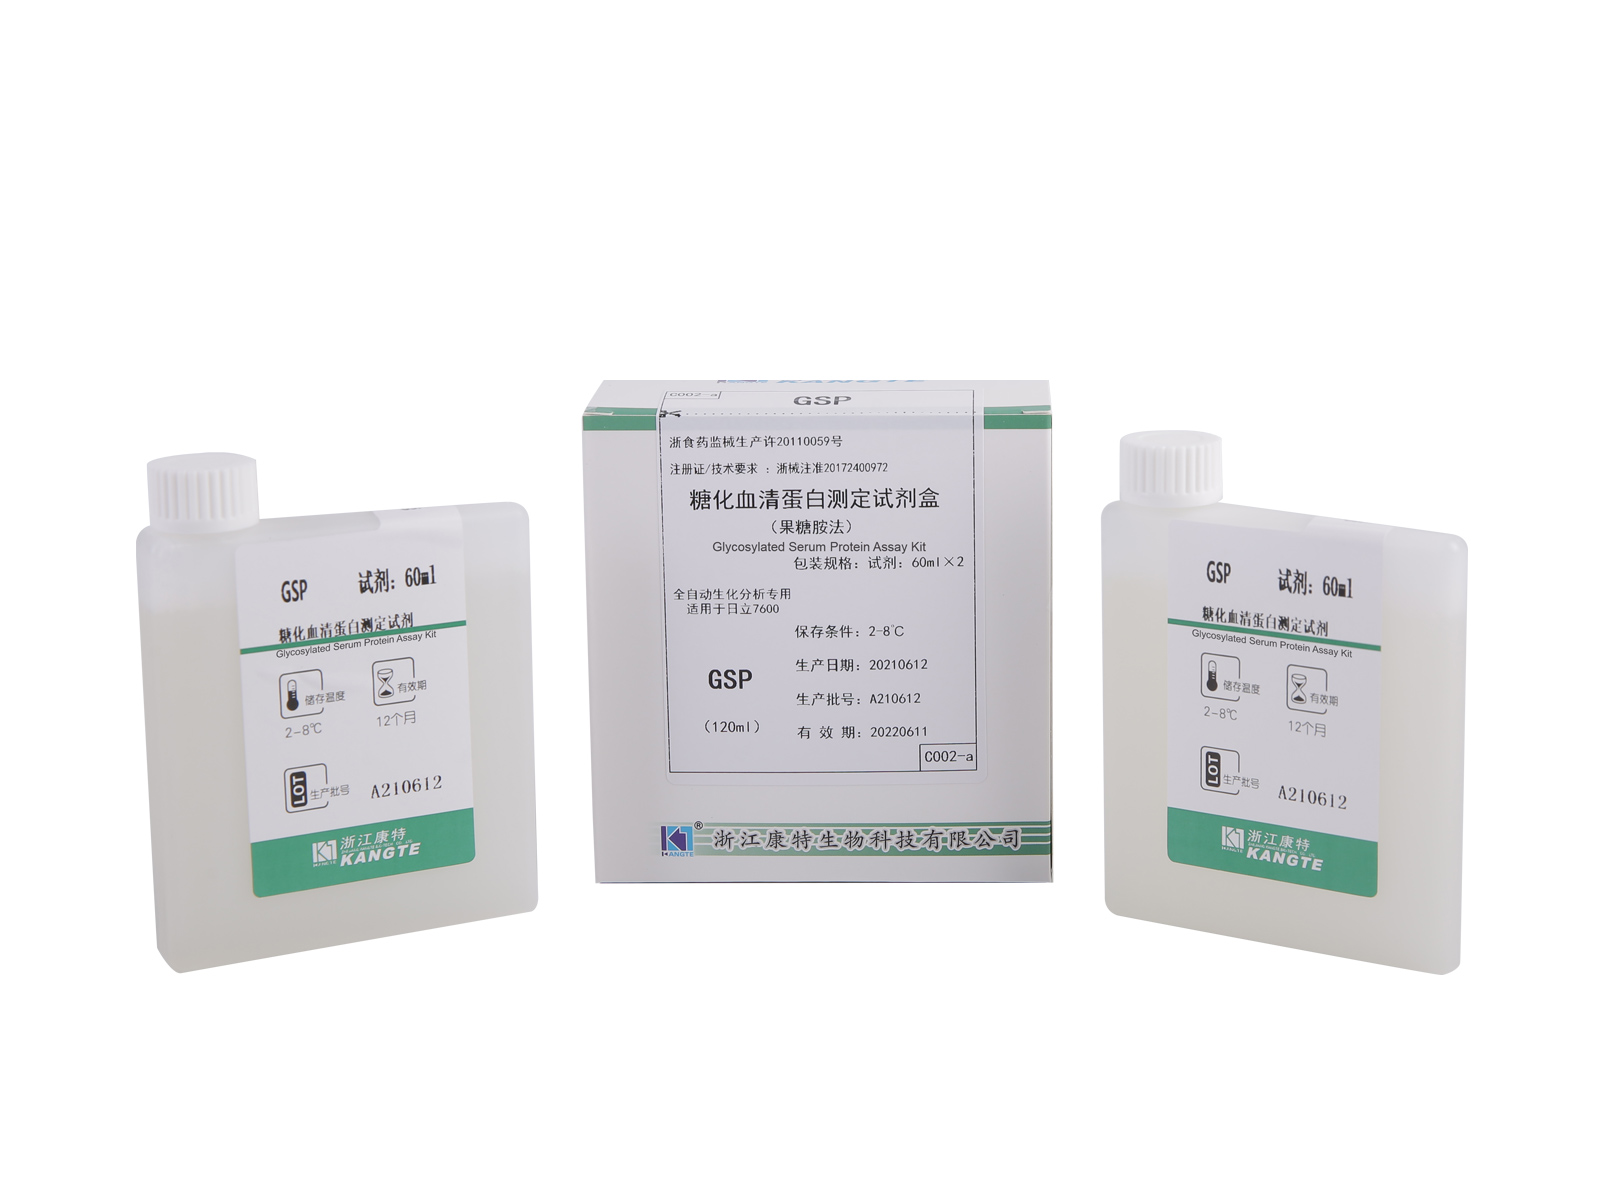 【GSP】Kit per il dosaggio delle proteine ​​sieriche glicosilate (metodo fruttosamina)